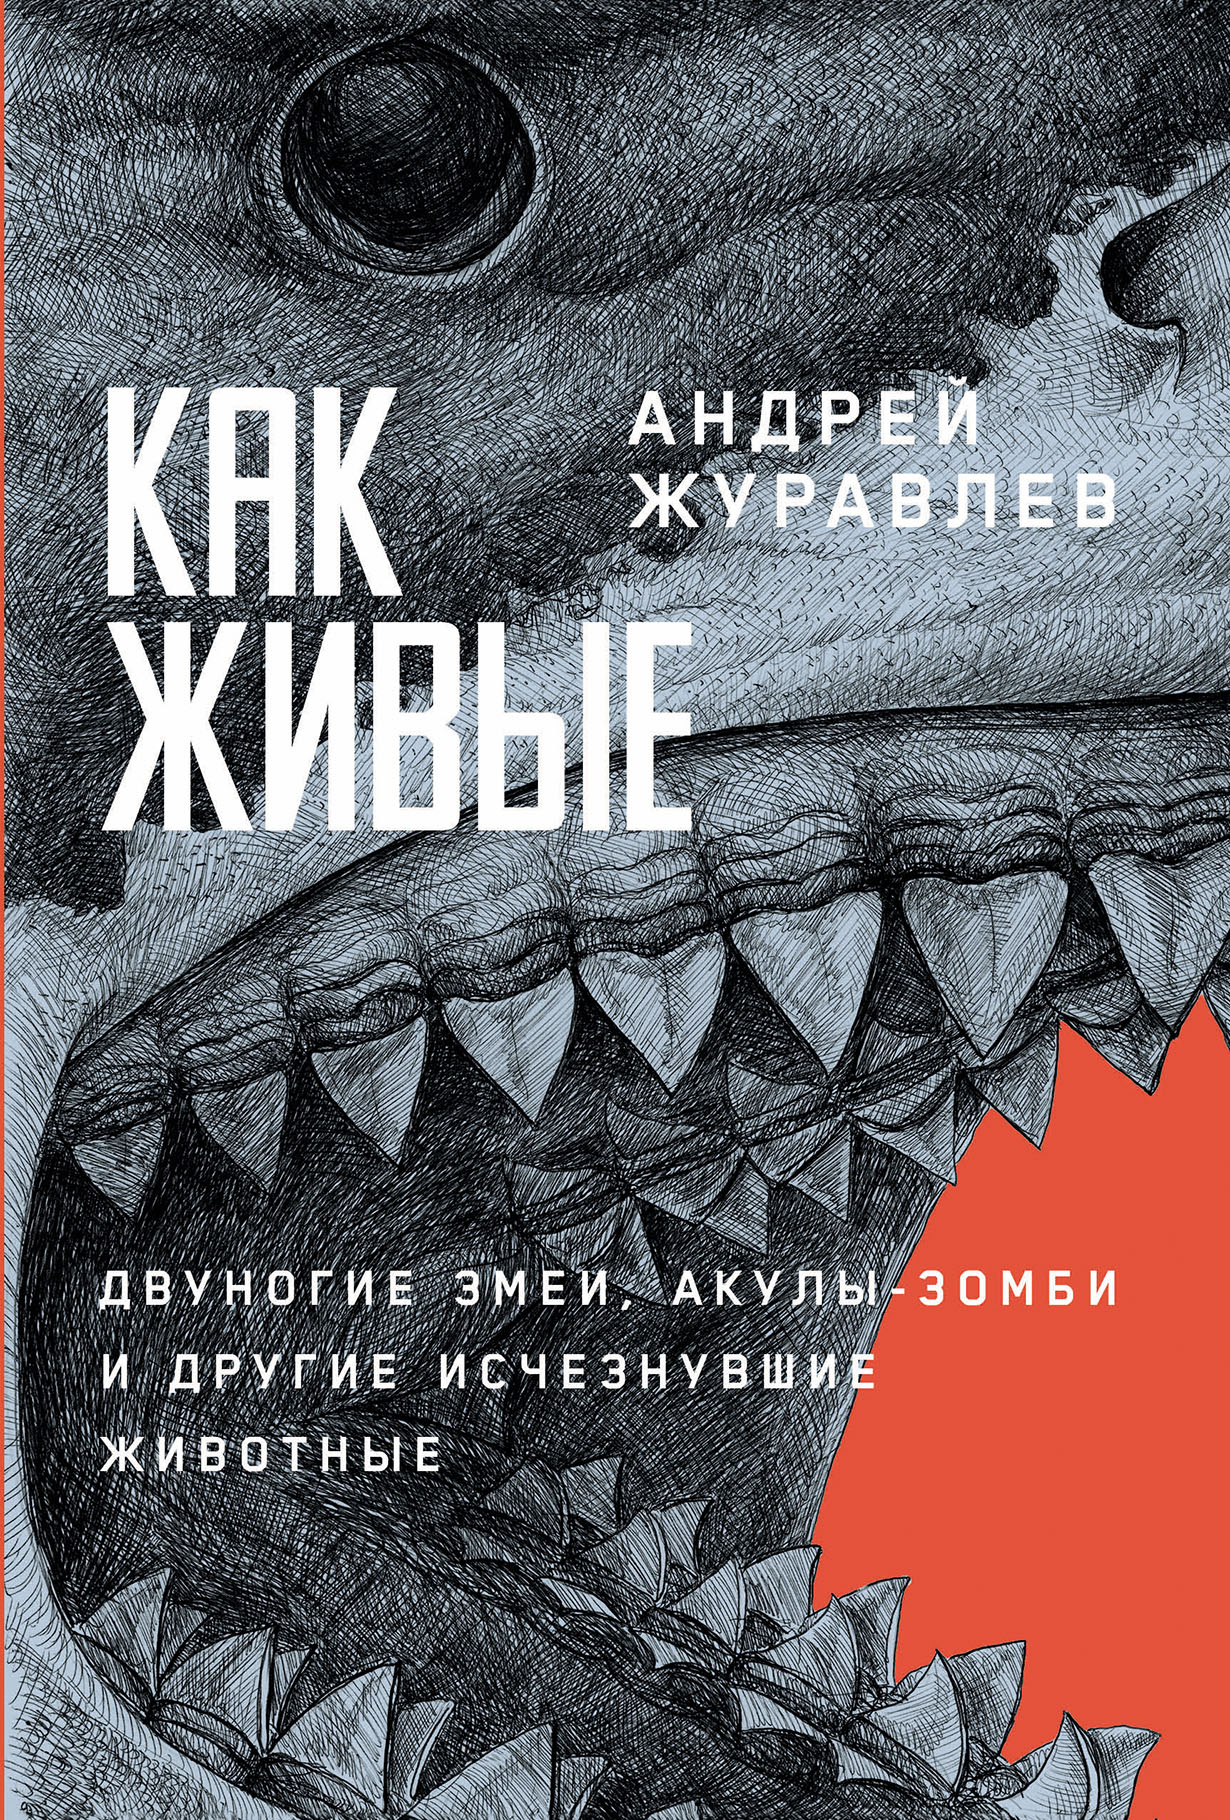 Как живые: Двуногие змеи, акулы-зомби и другие исчезнувшие животные — купить книгу Андрея Журавлёва на сайте alpinabook.ru